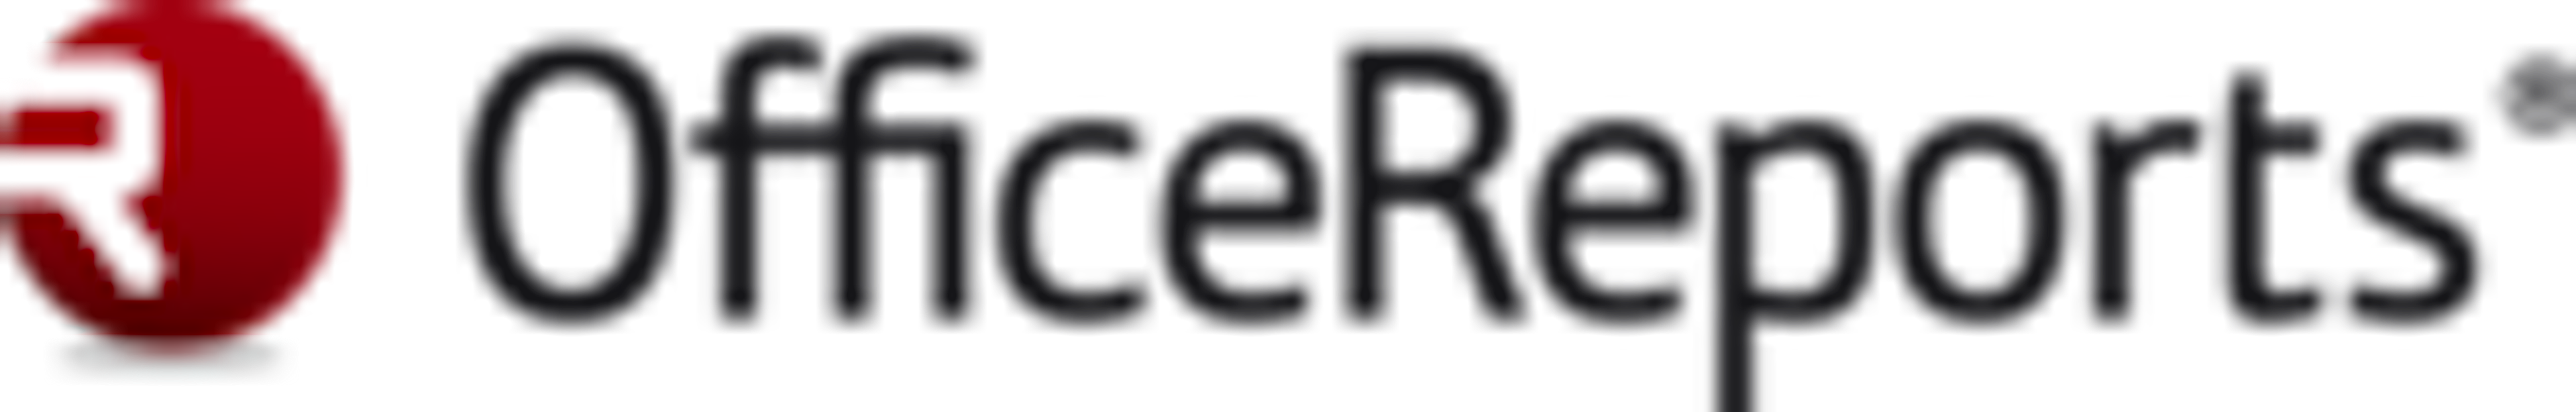 OfficeReports Logo